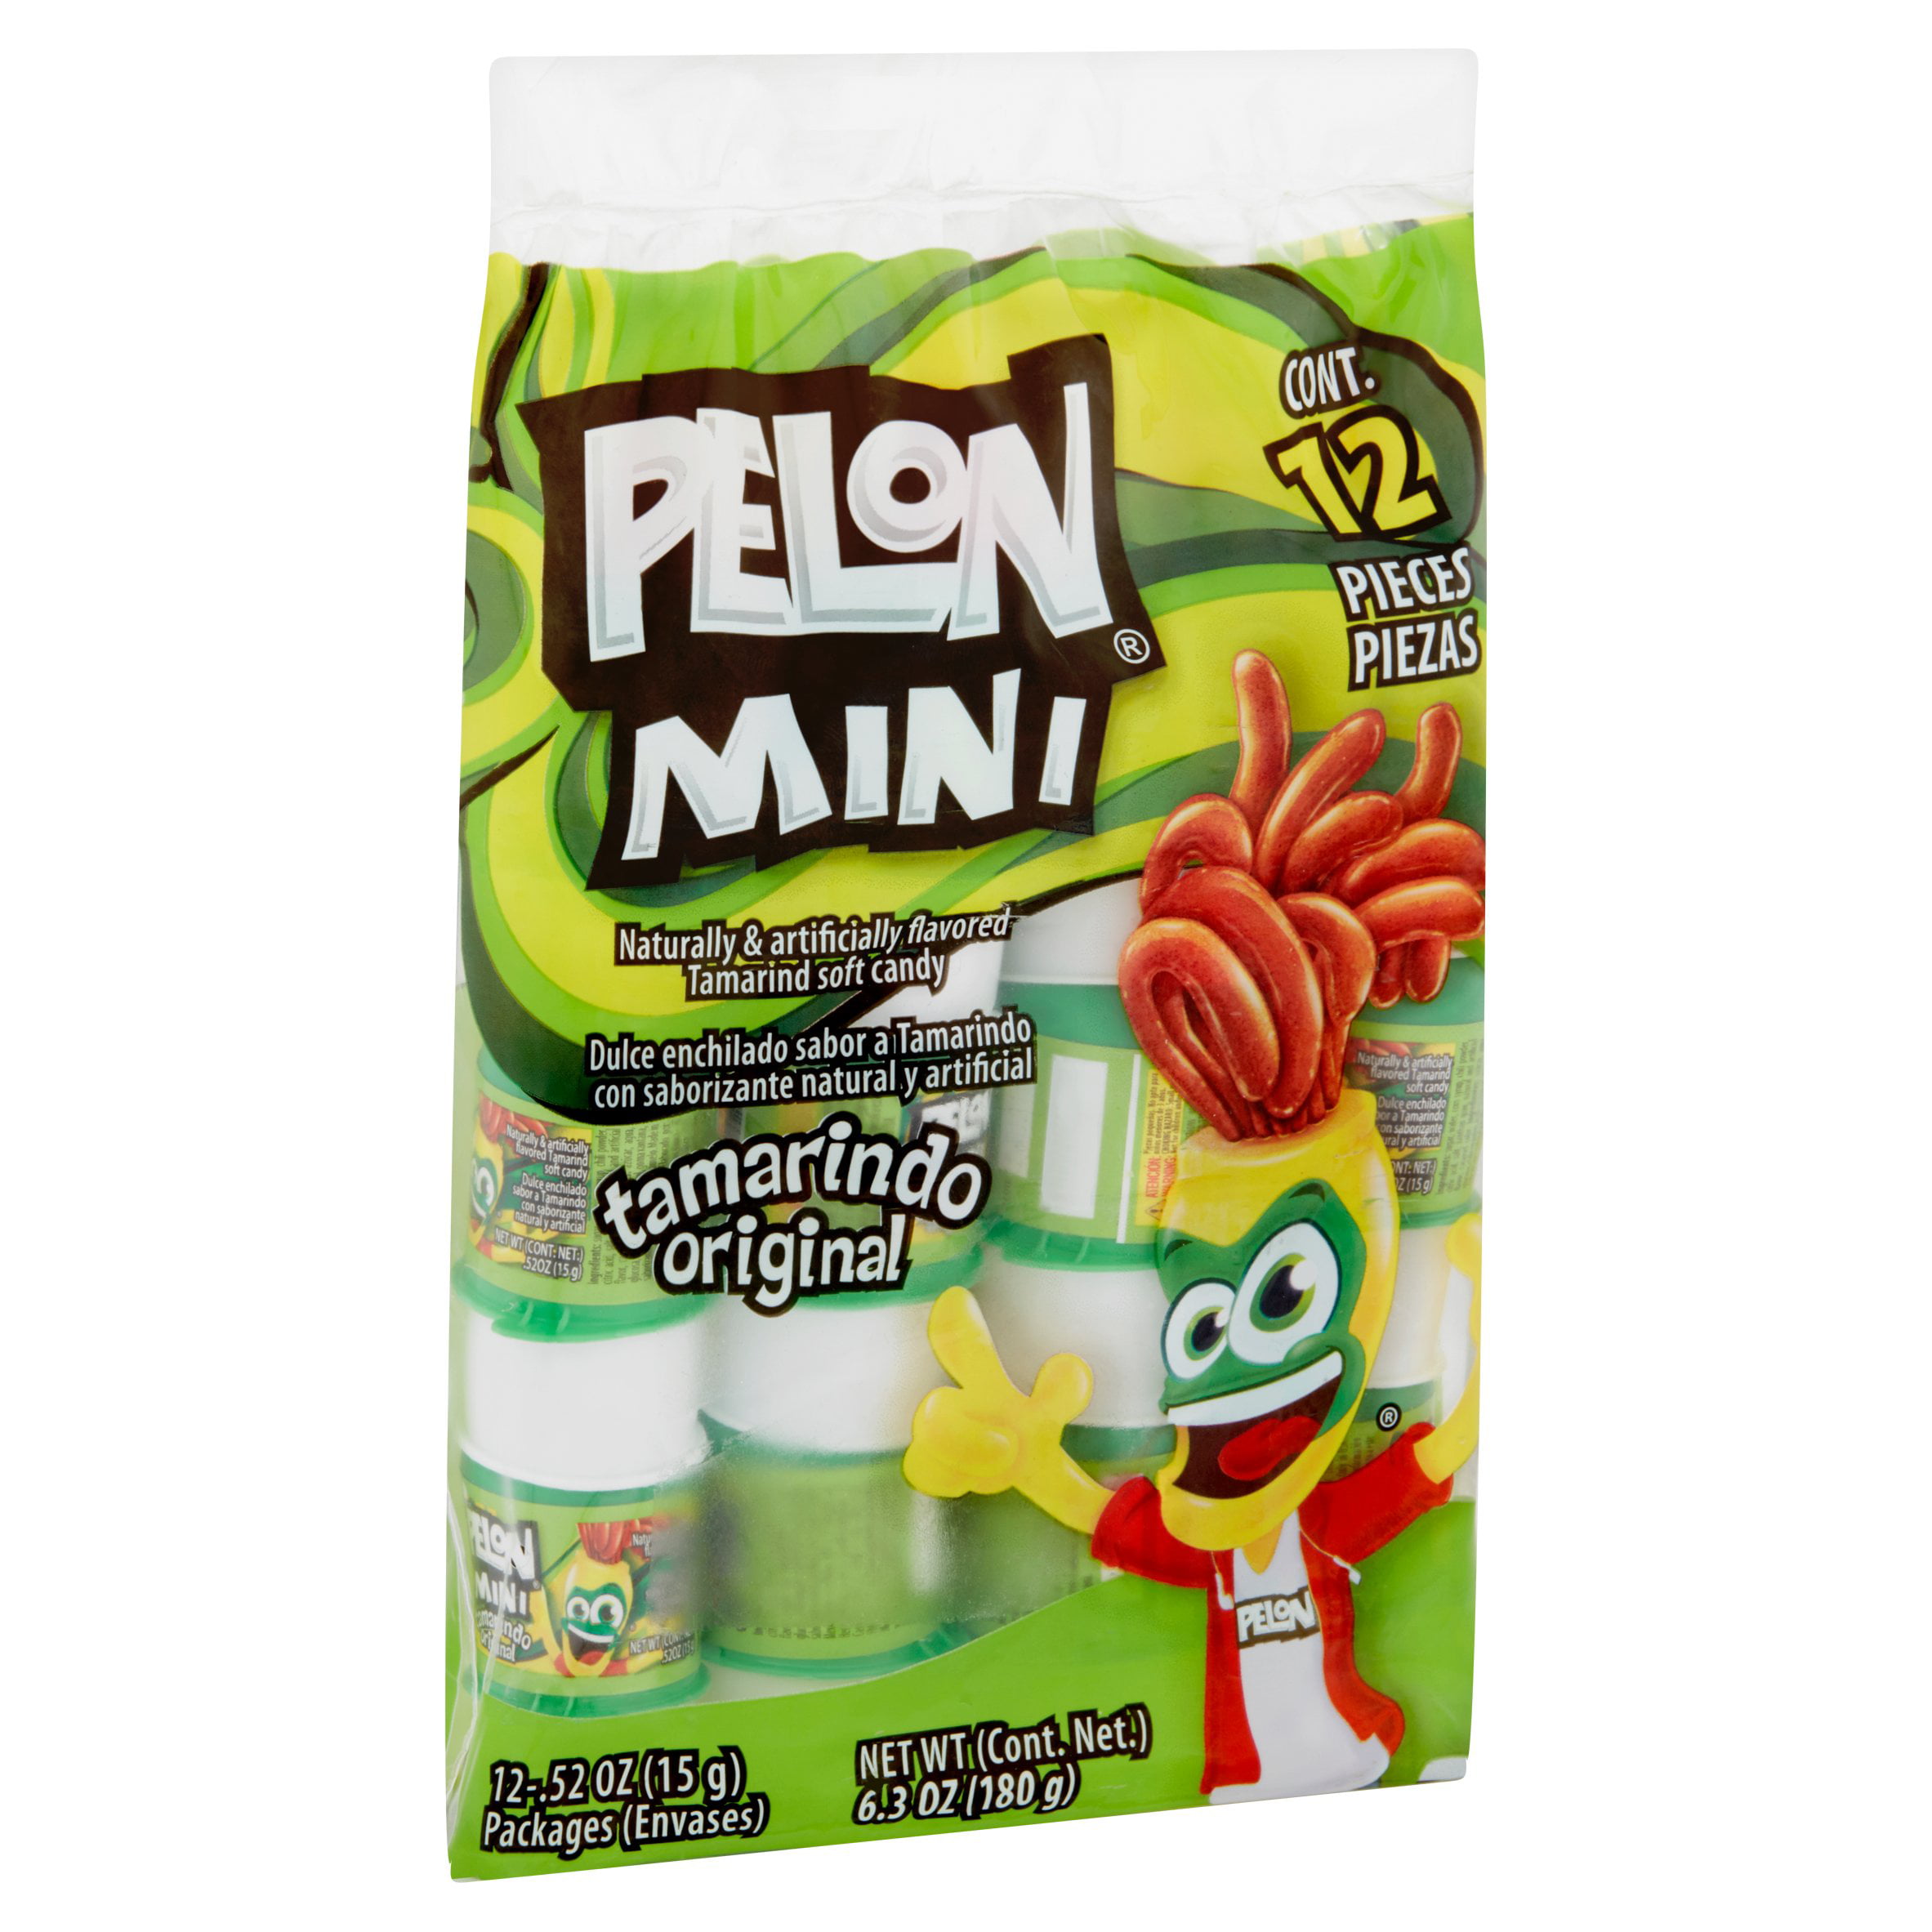 Pelon Mini Original Tamarindo Candy 0 52 Oz 12 Ct Walmart Com Walmart Com